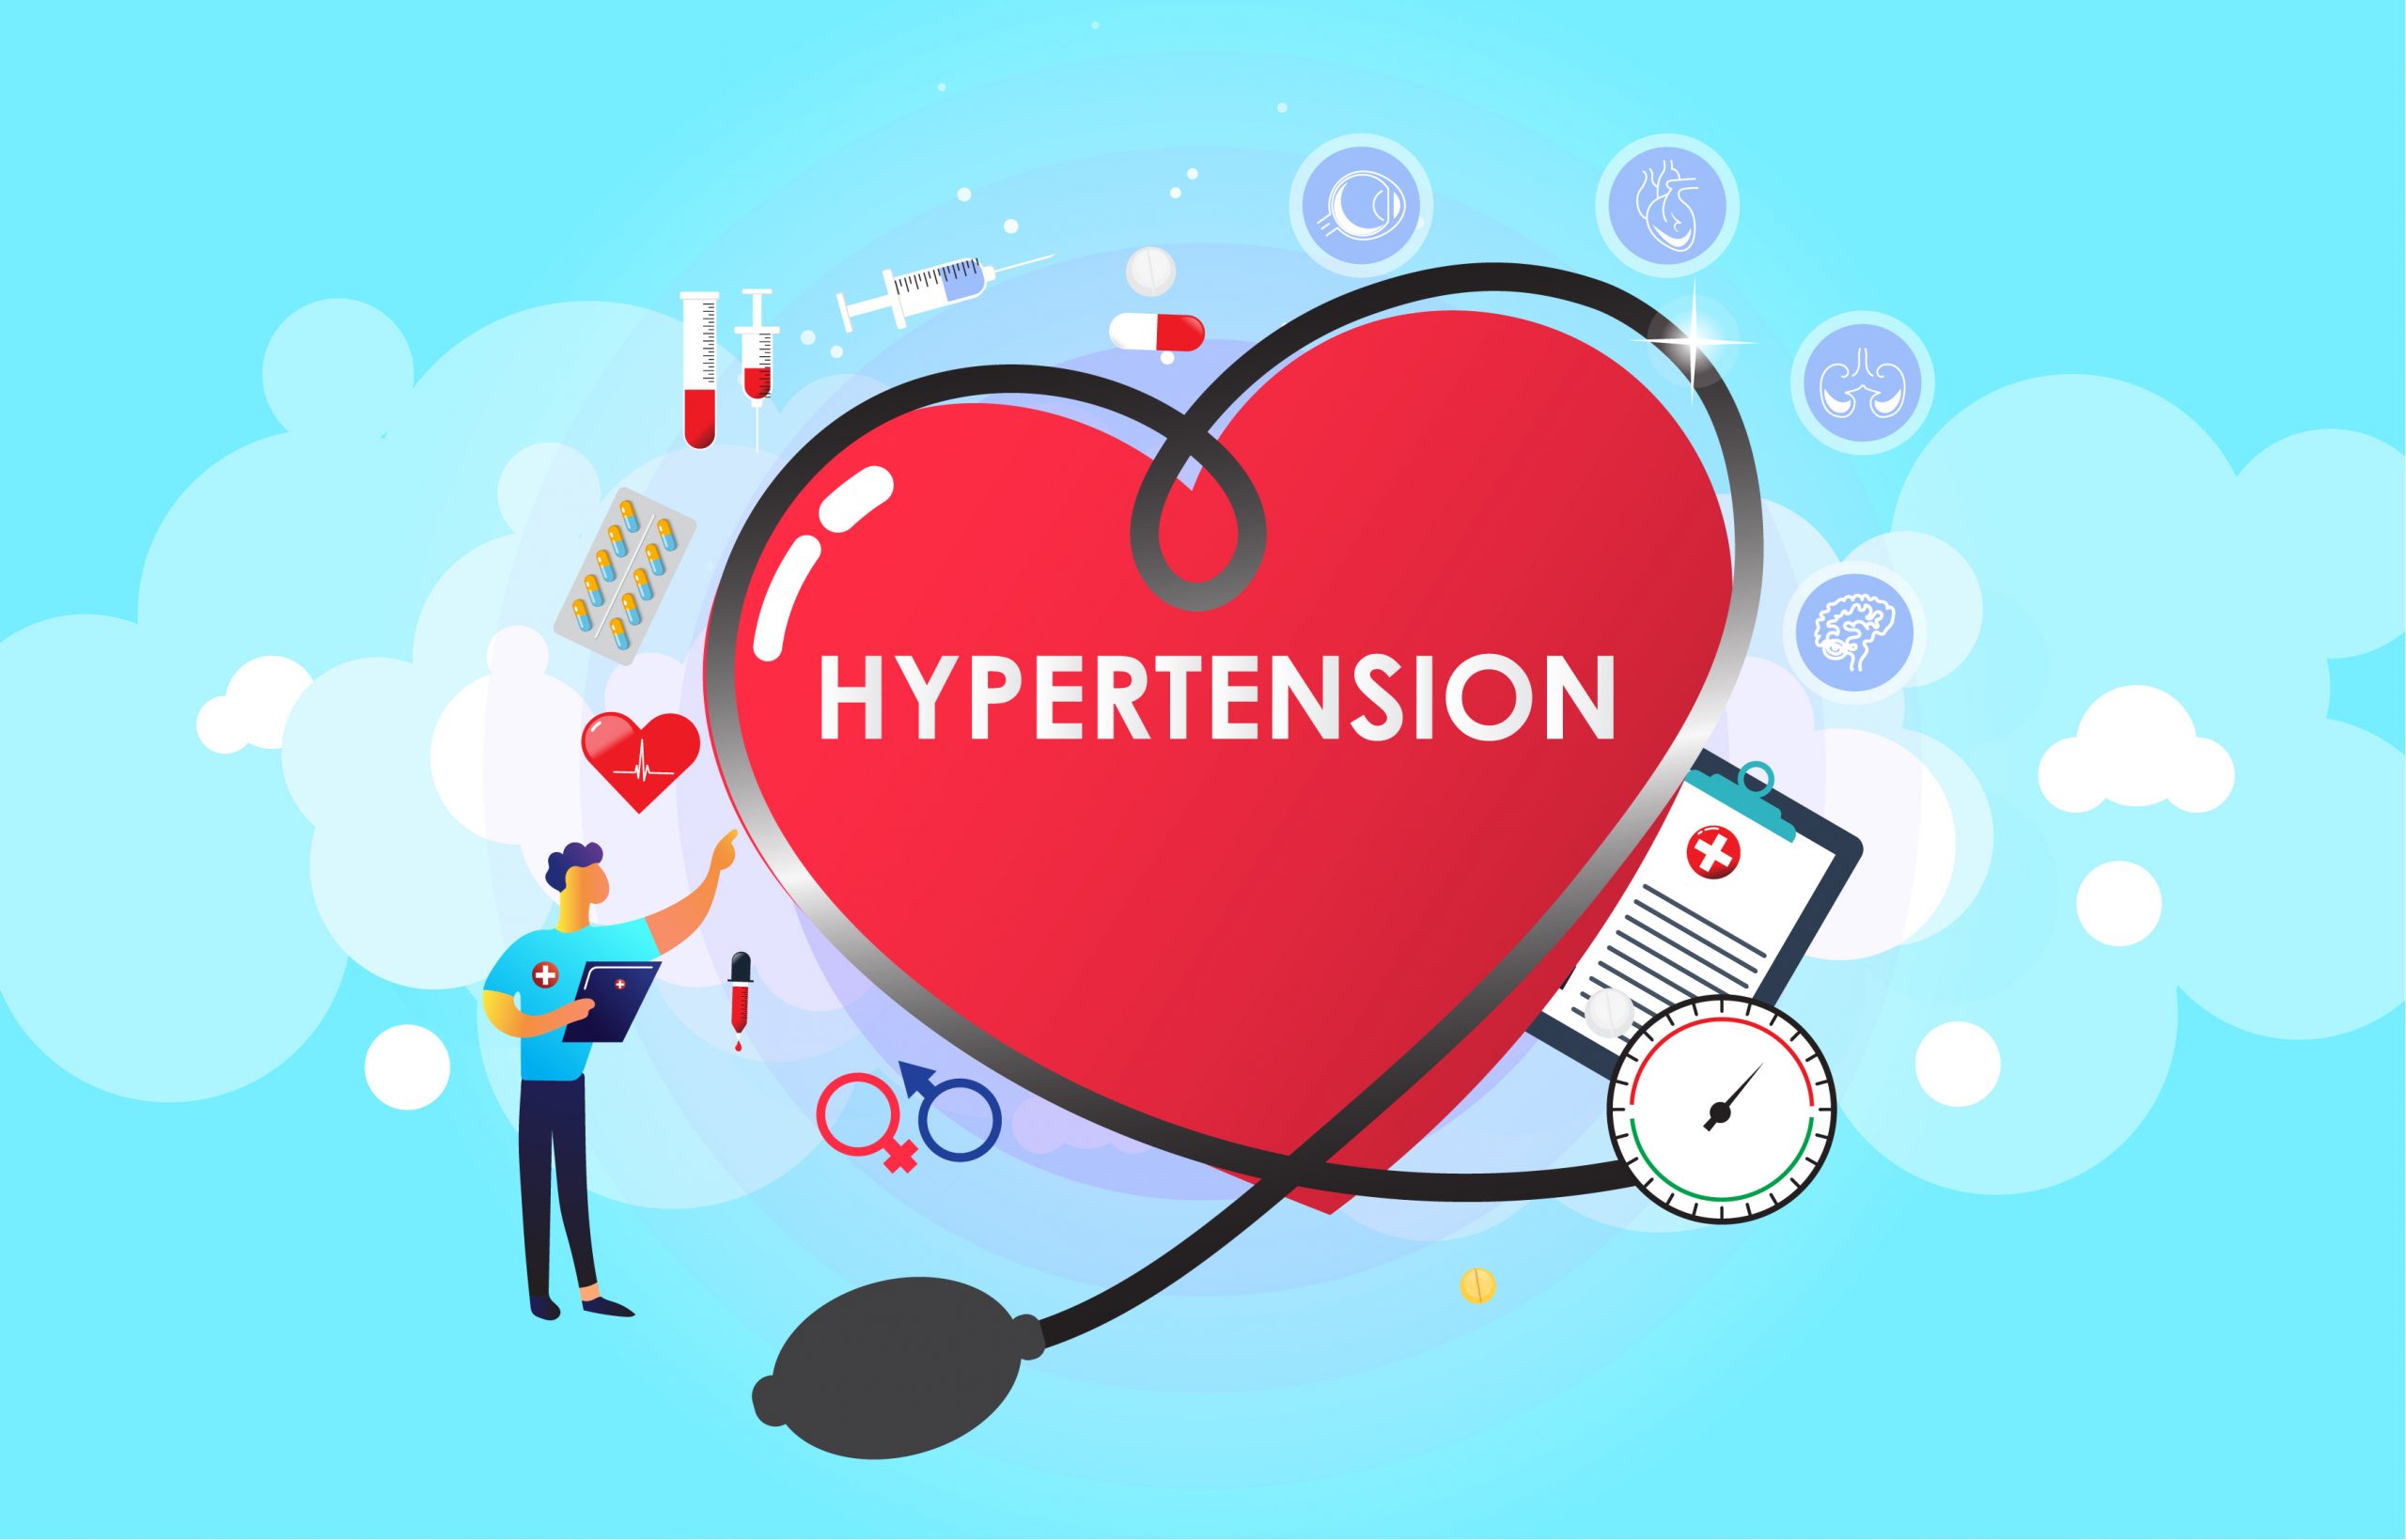 Helps in reducing hypertension